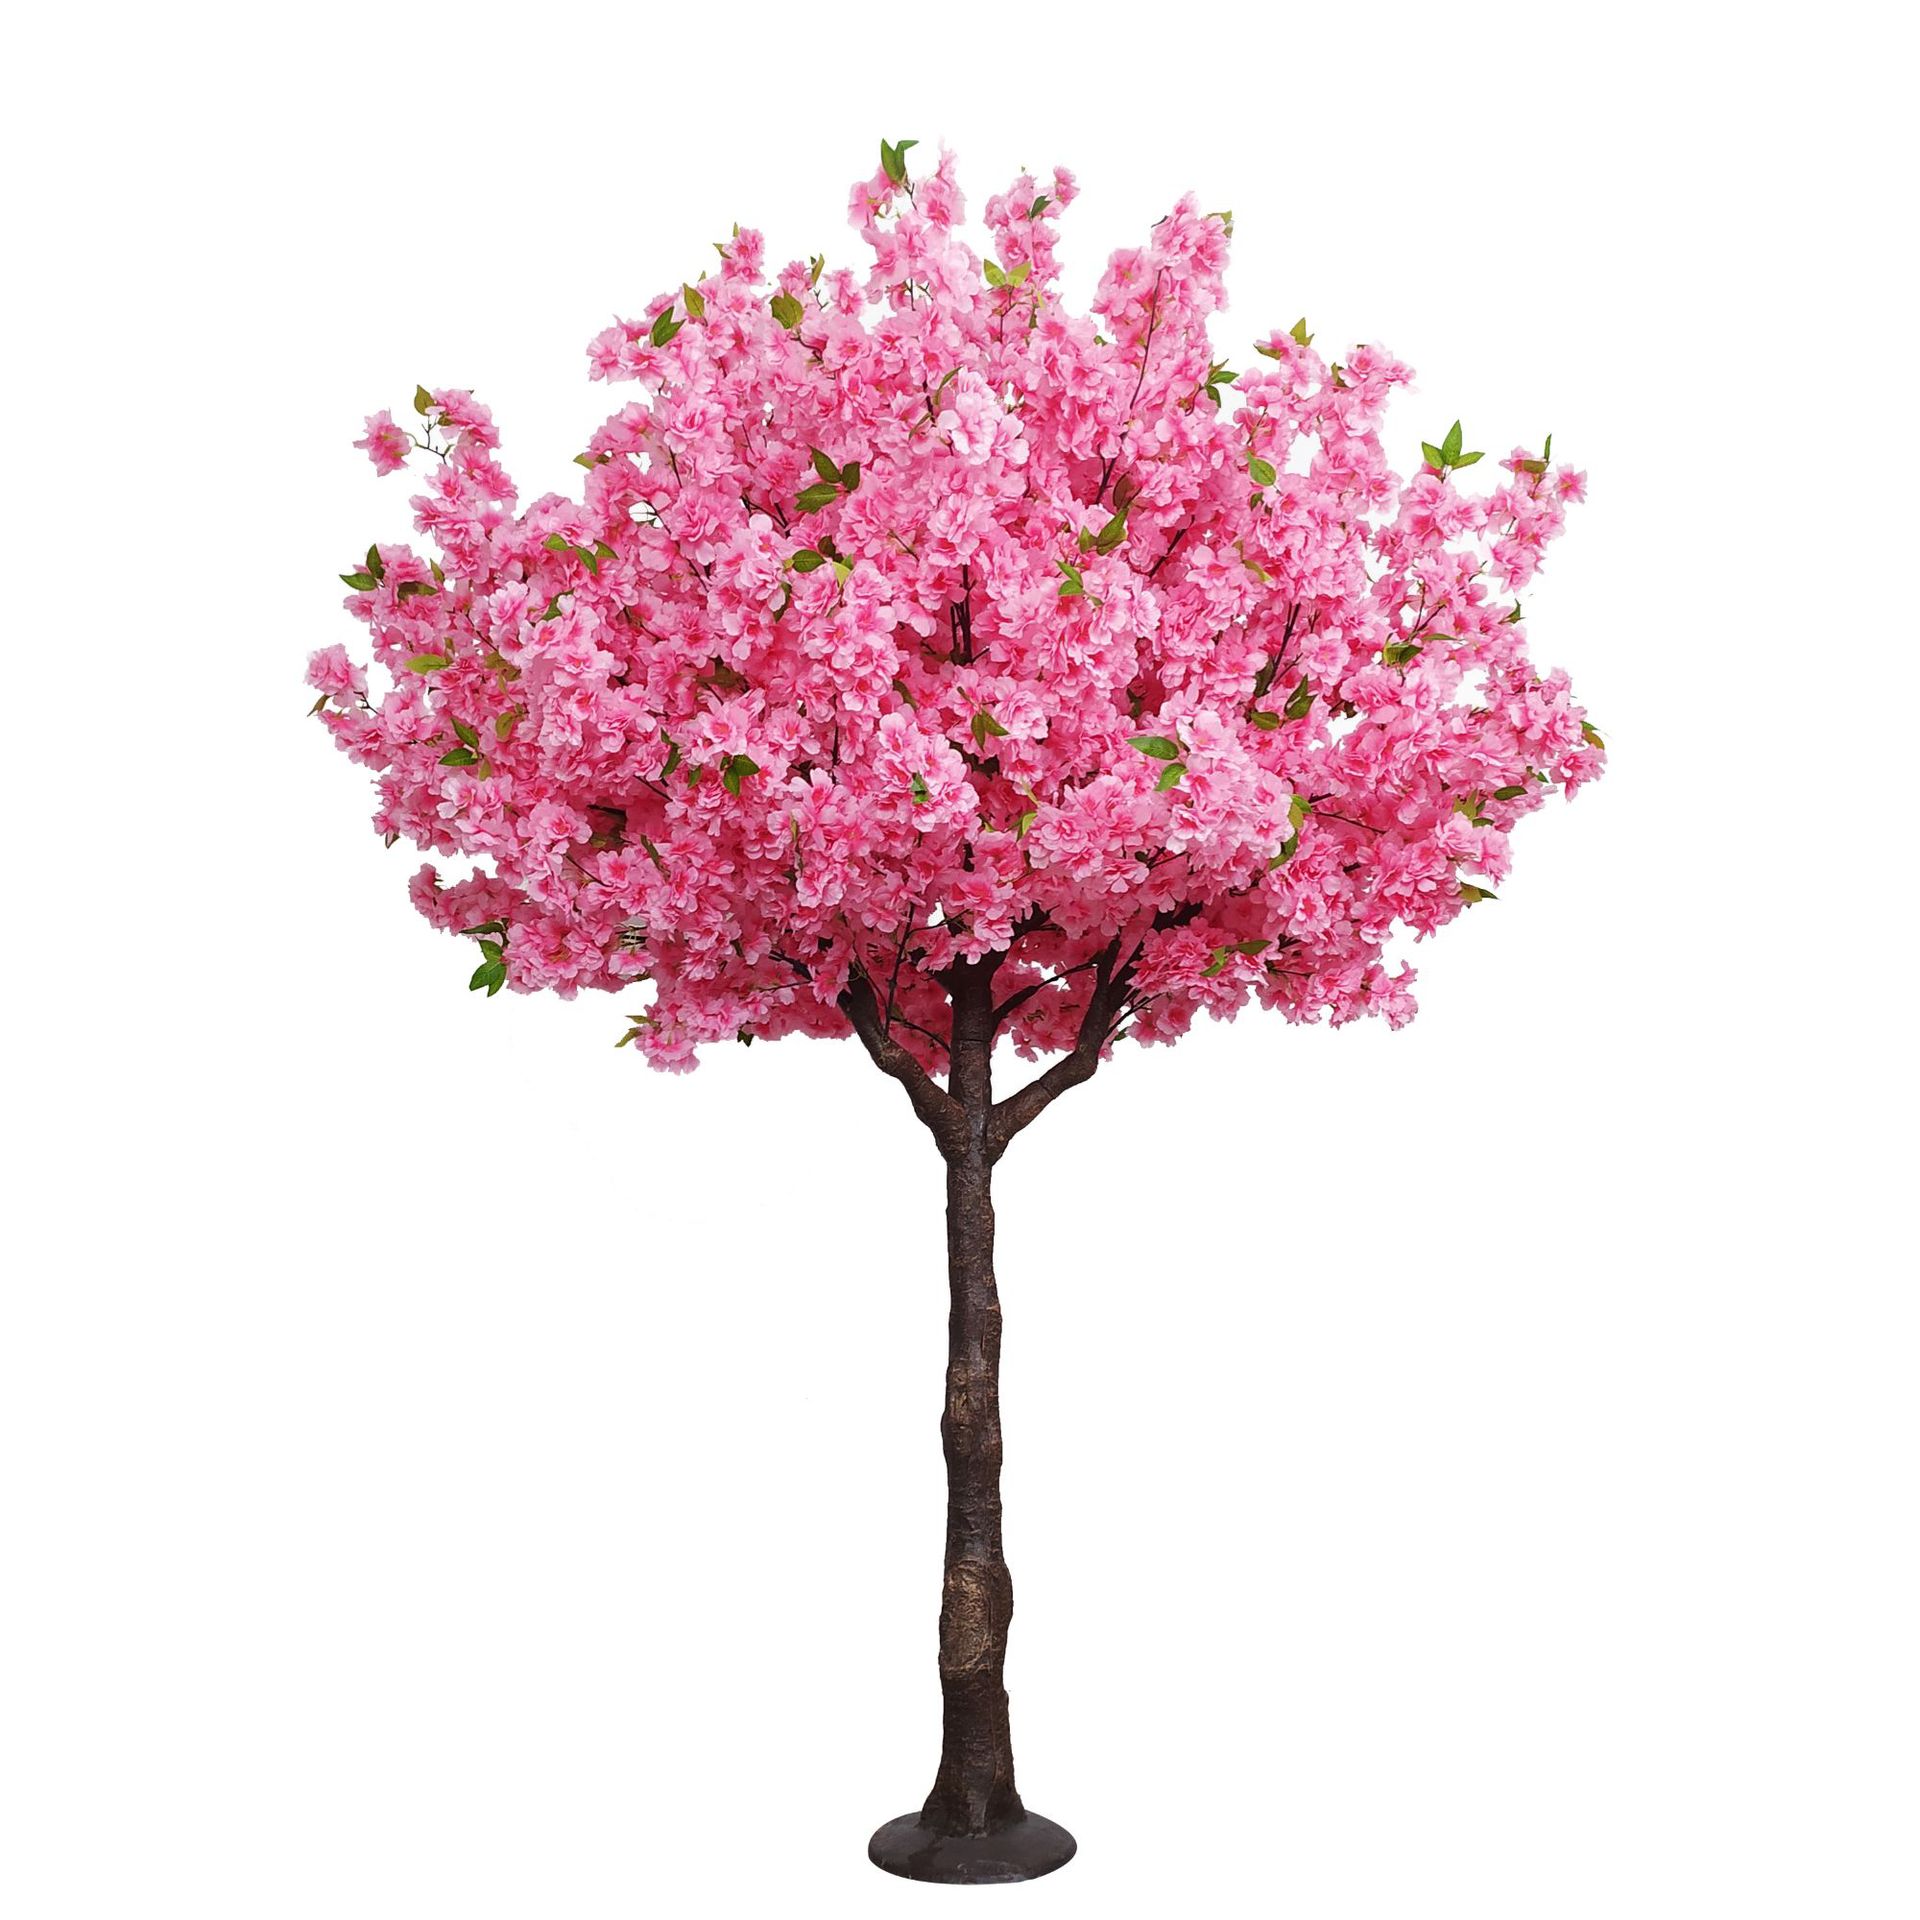 Cina Simulasi Cherry Blossom Tree Kustomisasi Gedhe Indoor lan Outdoor Dekorasi Ponggawa Sakura Tree Wedding Landscaping produsen, supplier